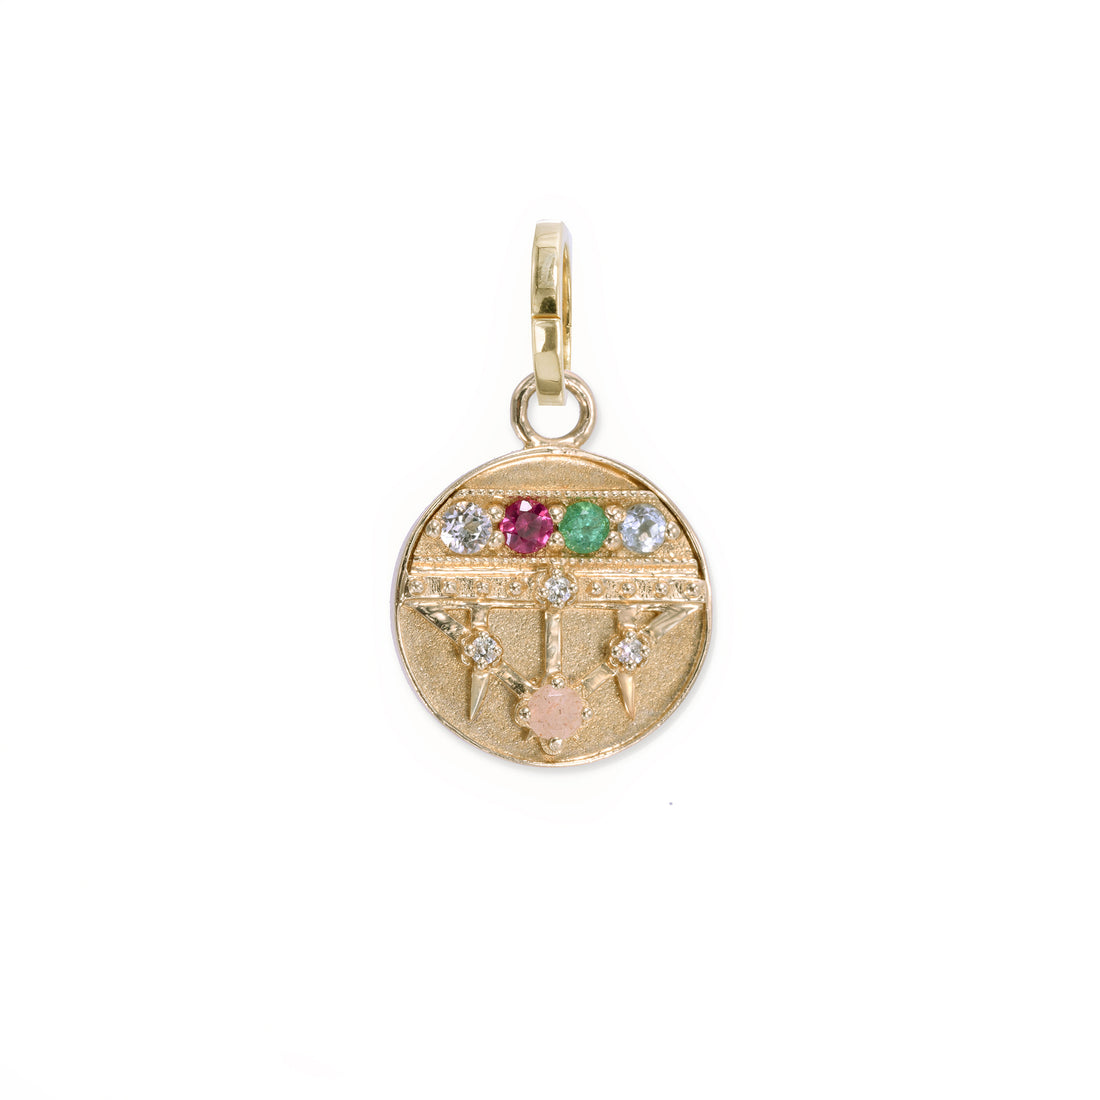 Mini Lace Shield Medallion - "Dream" - 5 Stones